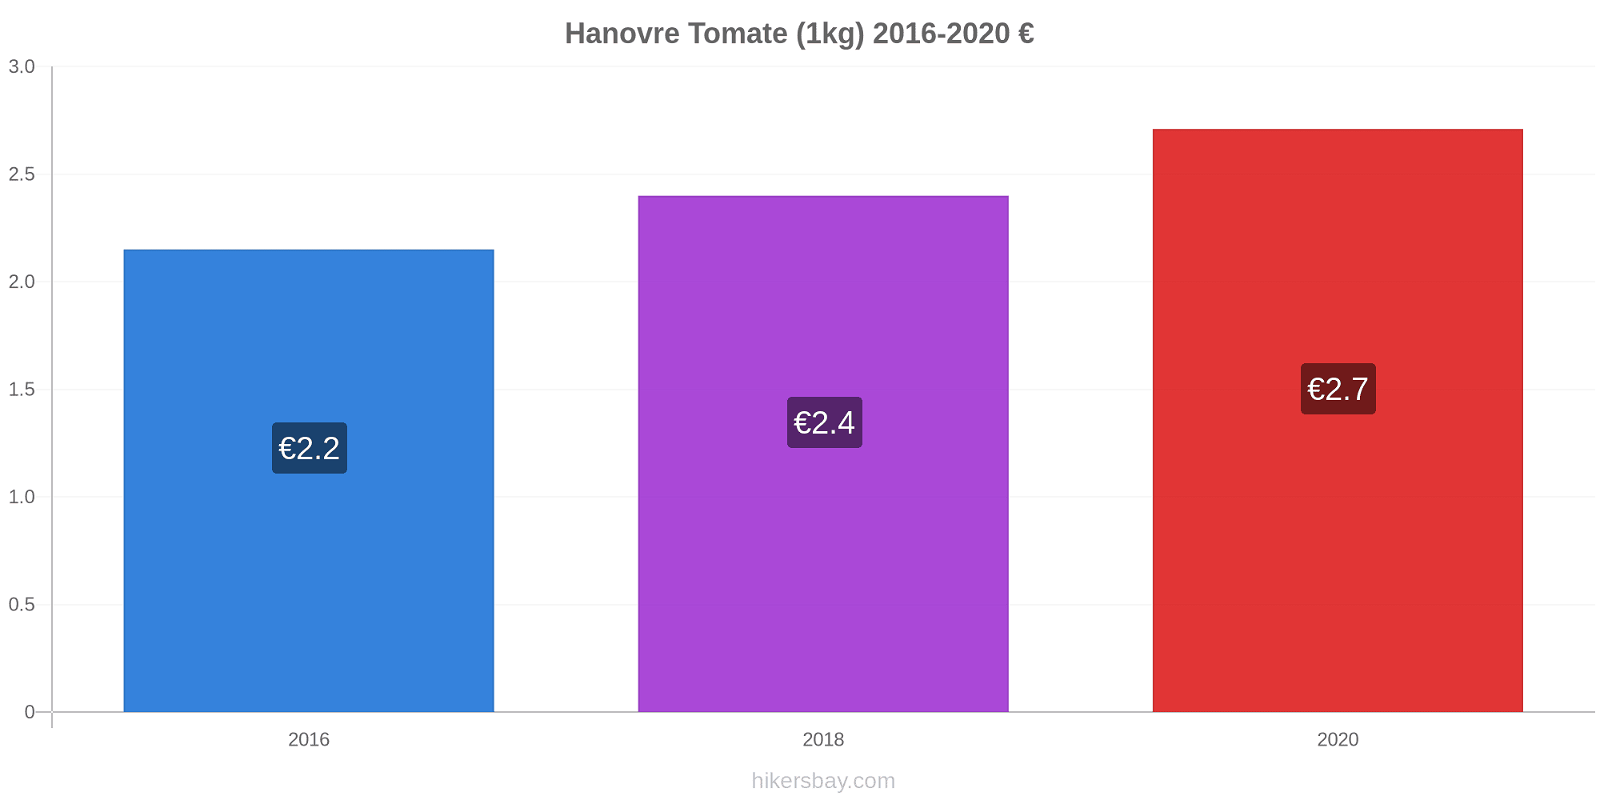 Hanovre changements de prix Tomate (1kg) hikersbay.com